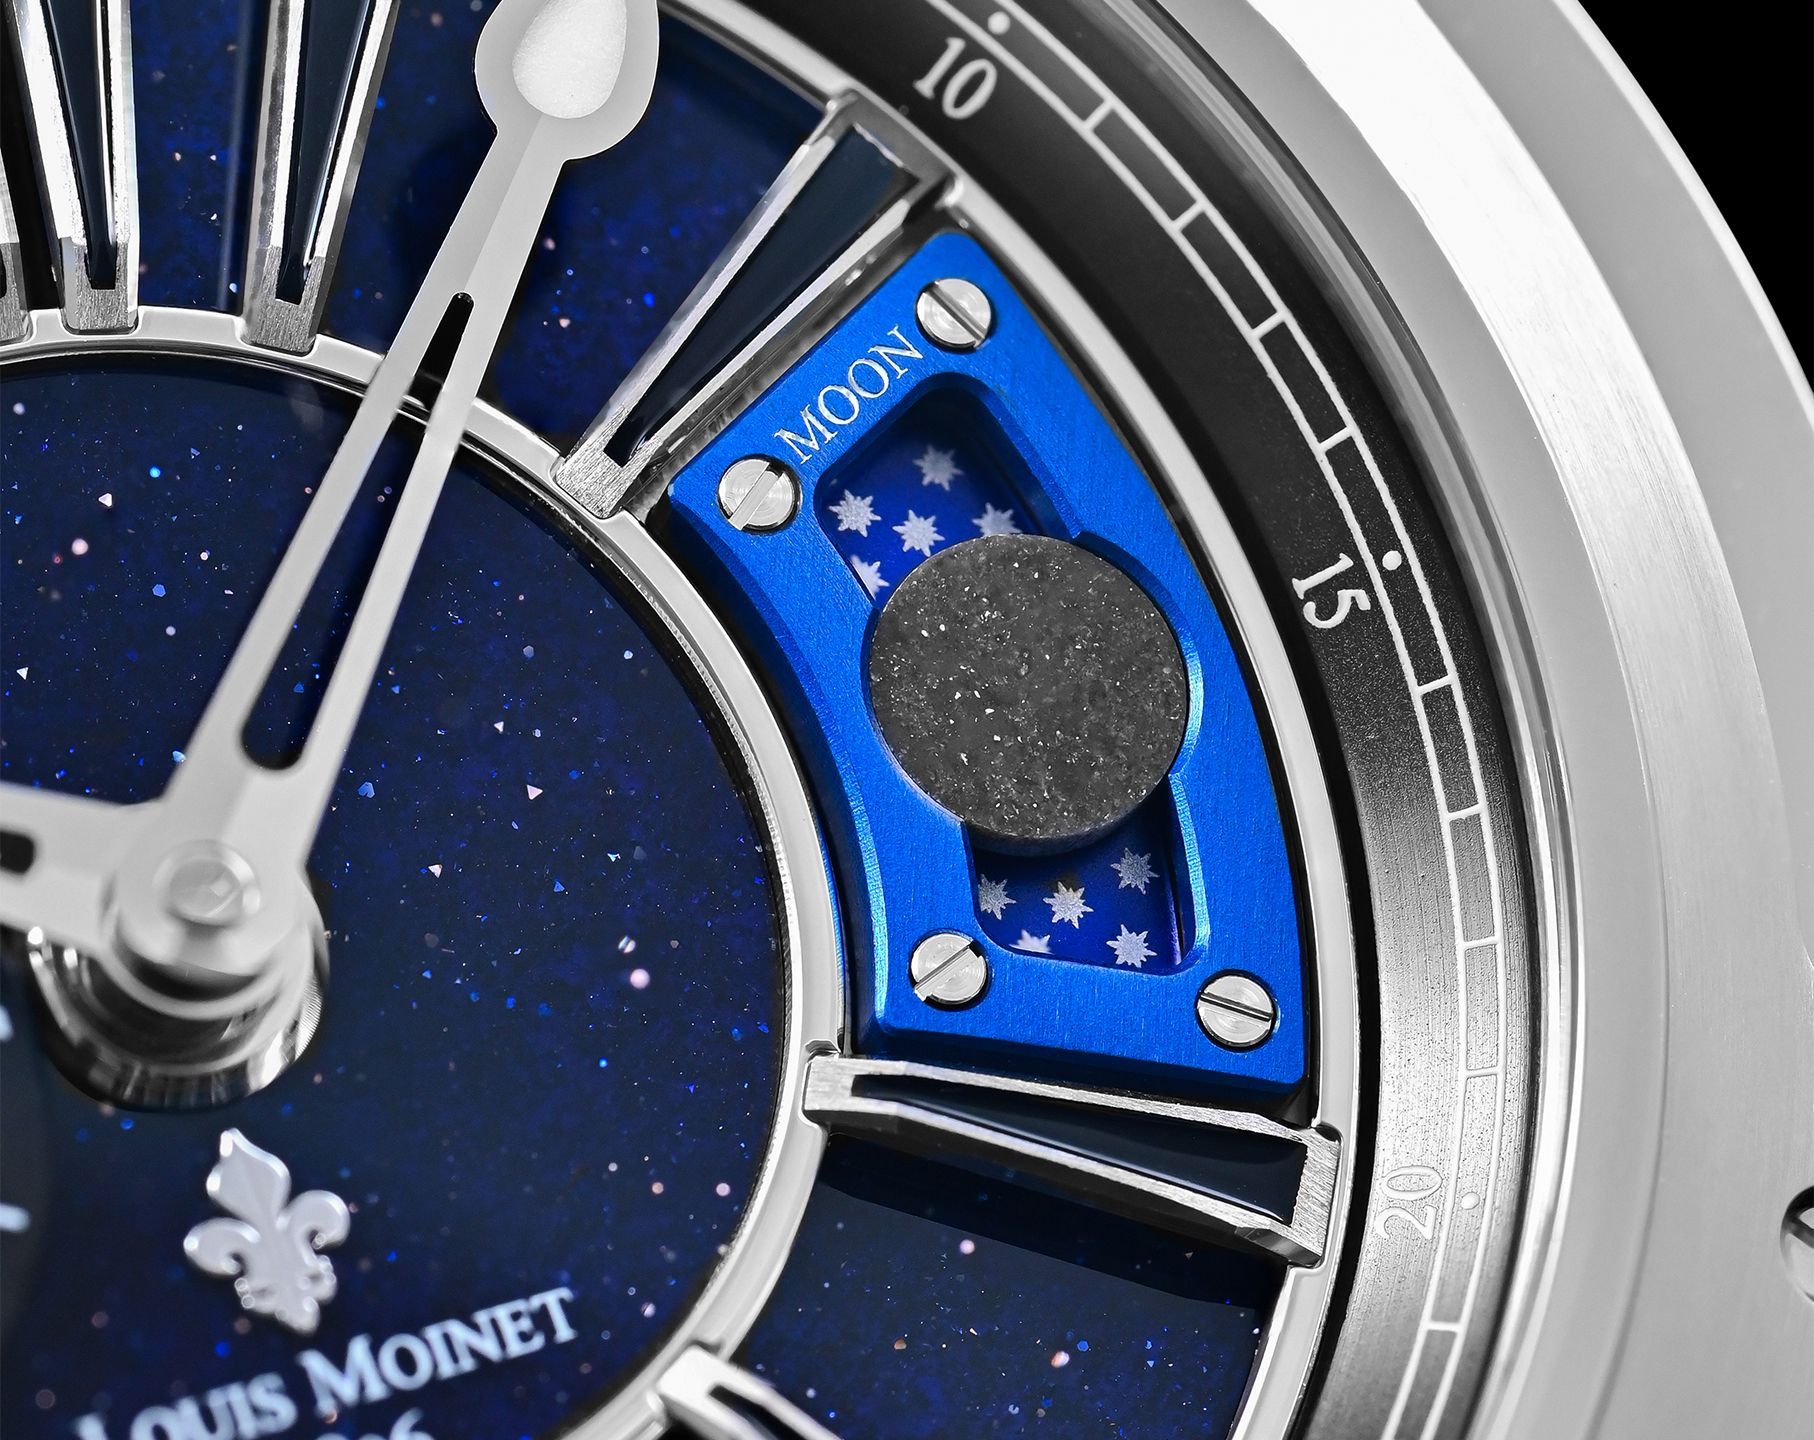 Louis Moinet Moon 45.4 mm Watch in Blue Dial For Men - 2